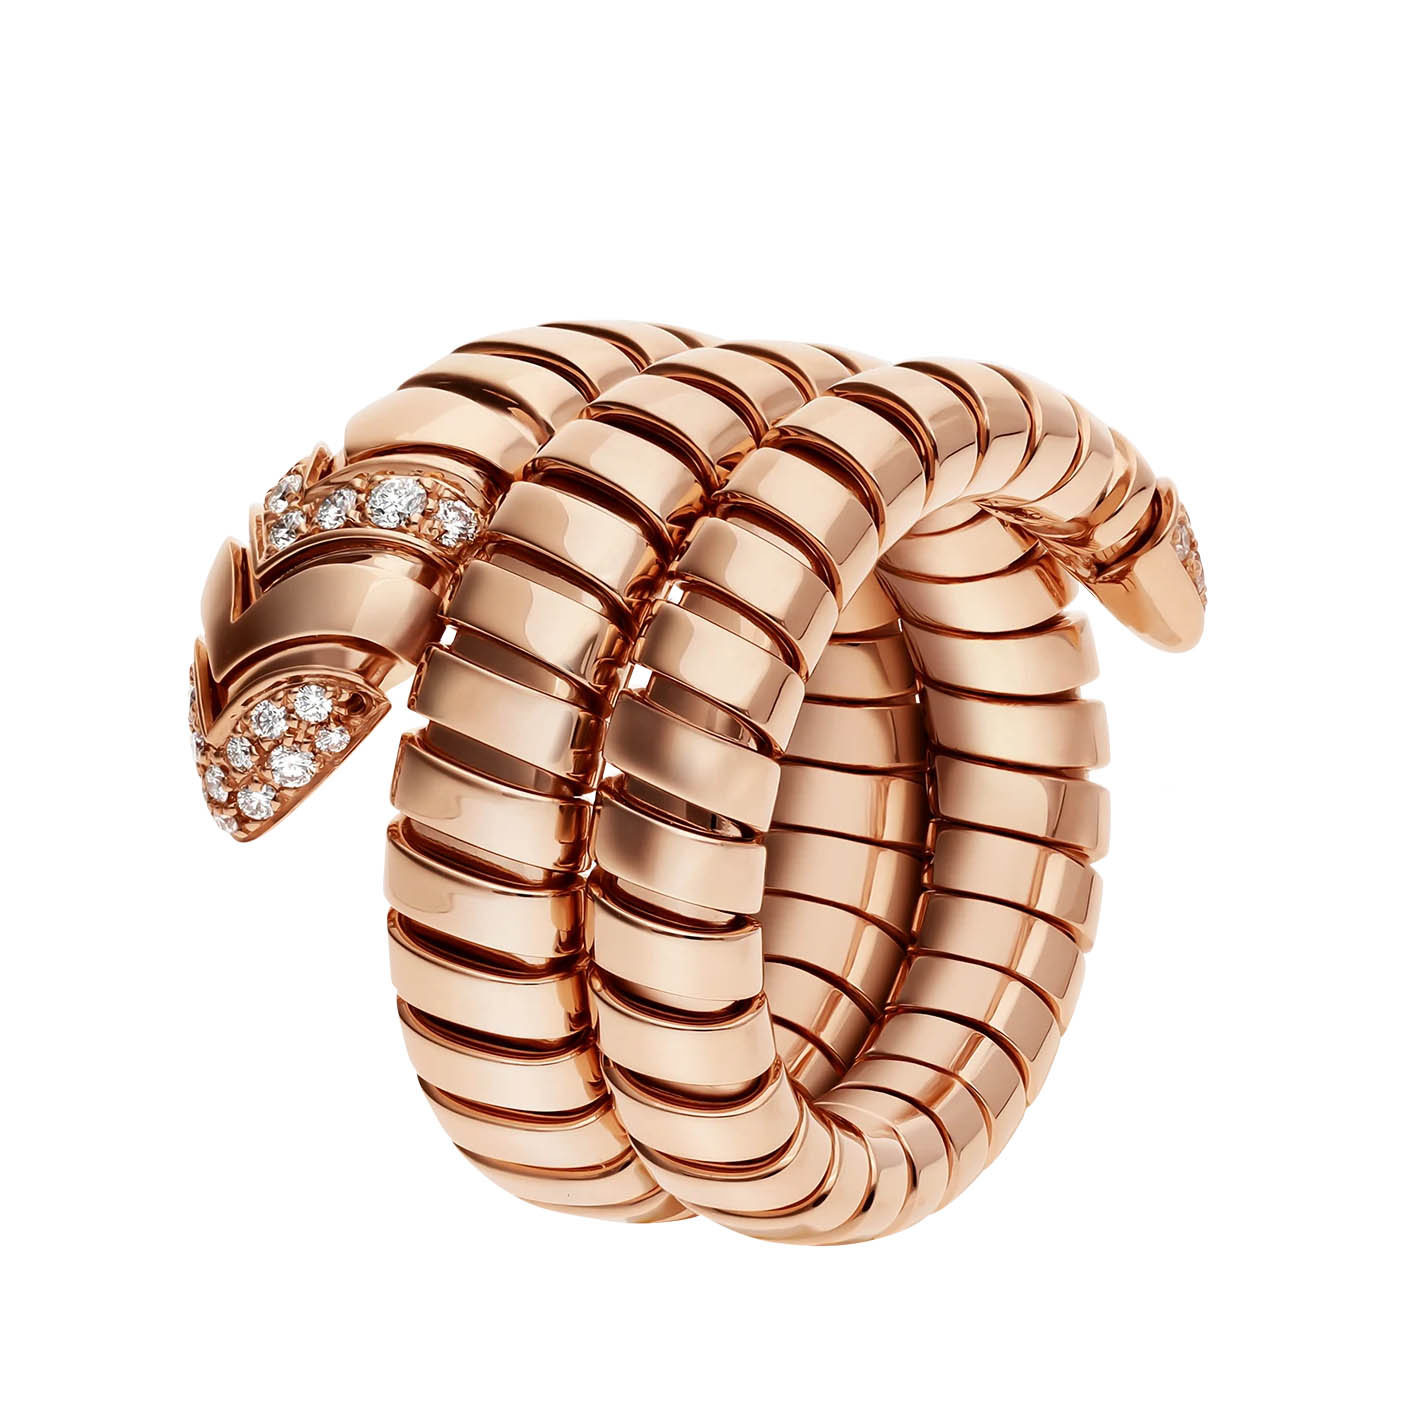 Оптовое двойное спиральное кольцо индивидуального дизайна OEM/ODM Ювелирные изделия из розового золота 18 карат с бриллиантовым паве на хвосте и головке OEM-производители ювелирных изделий